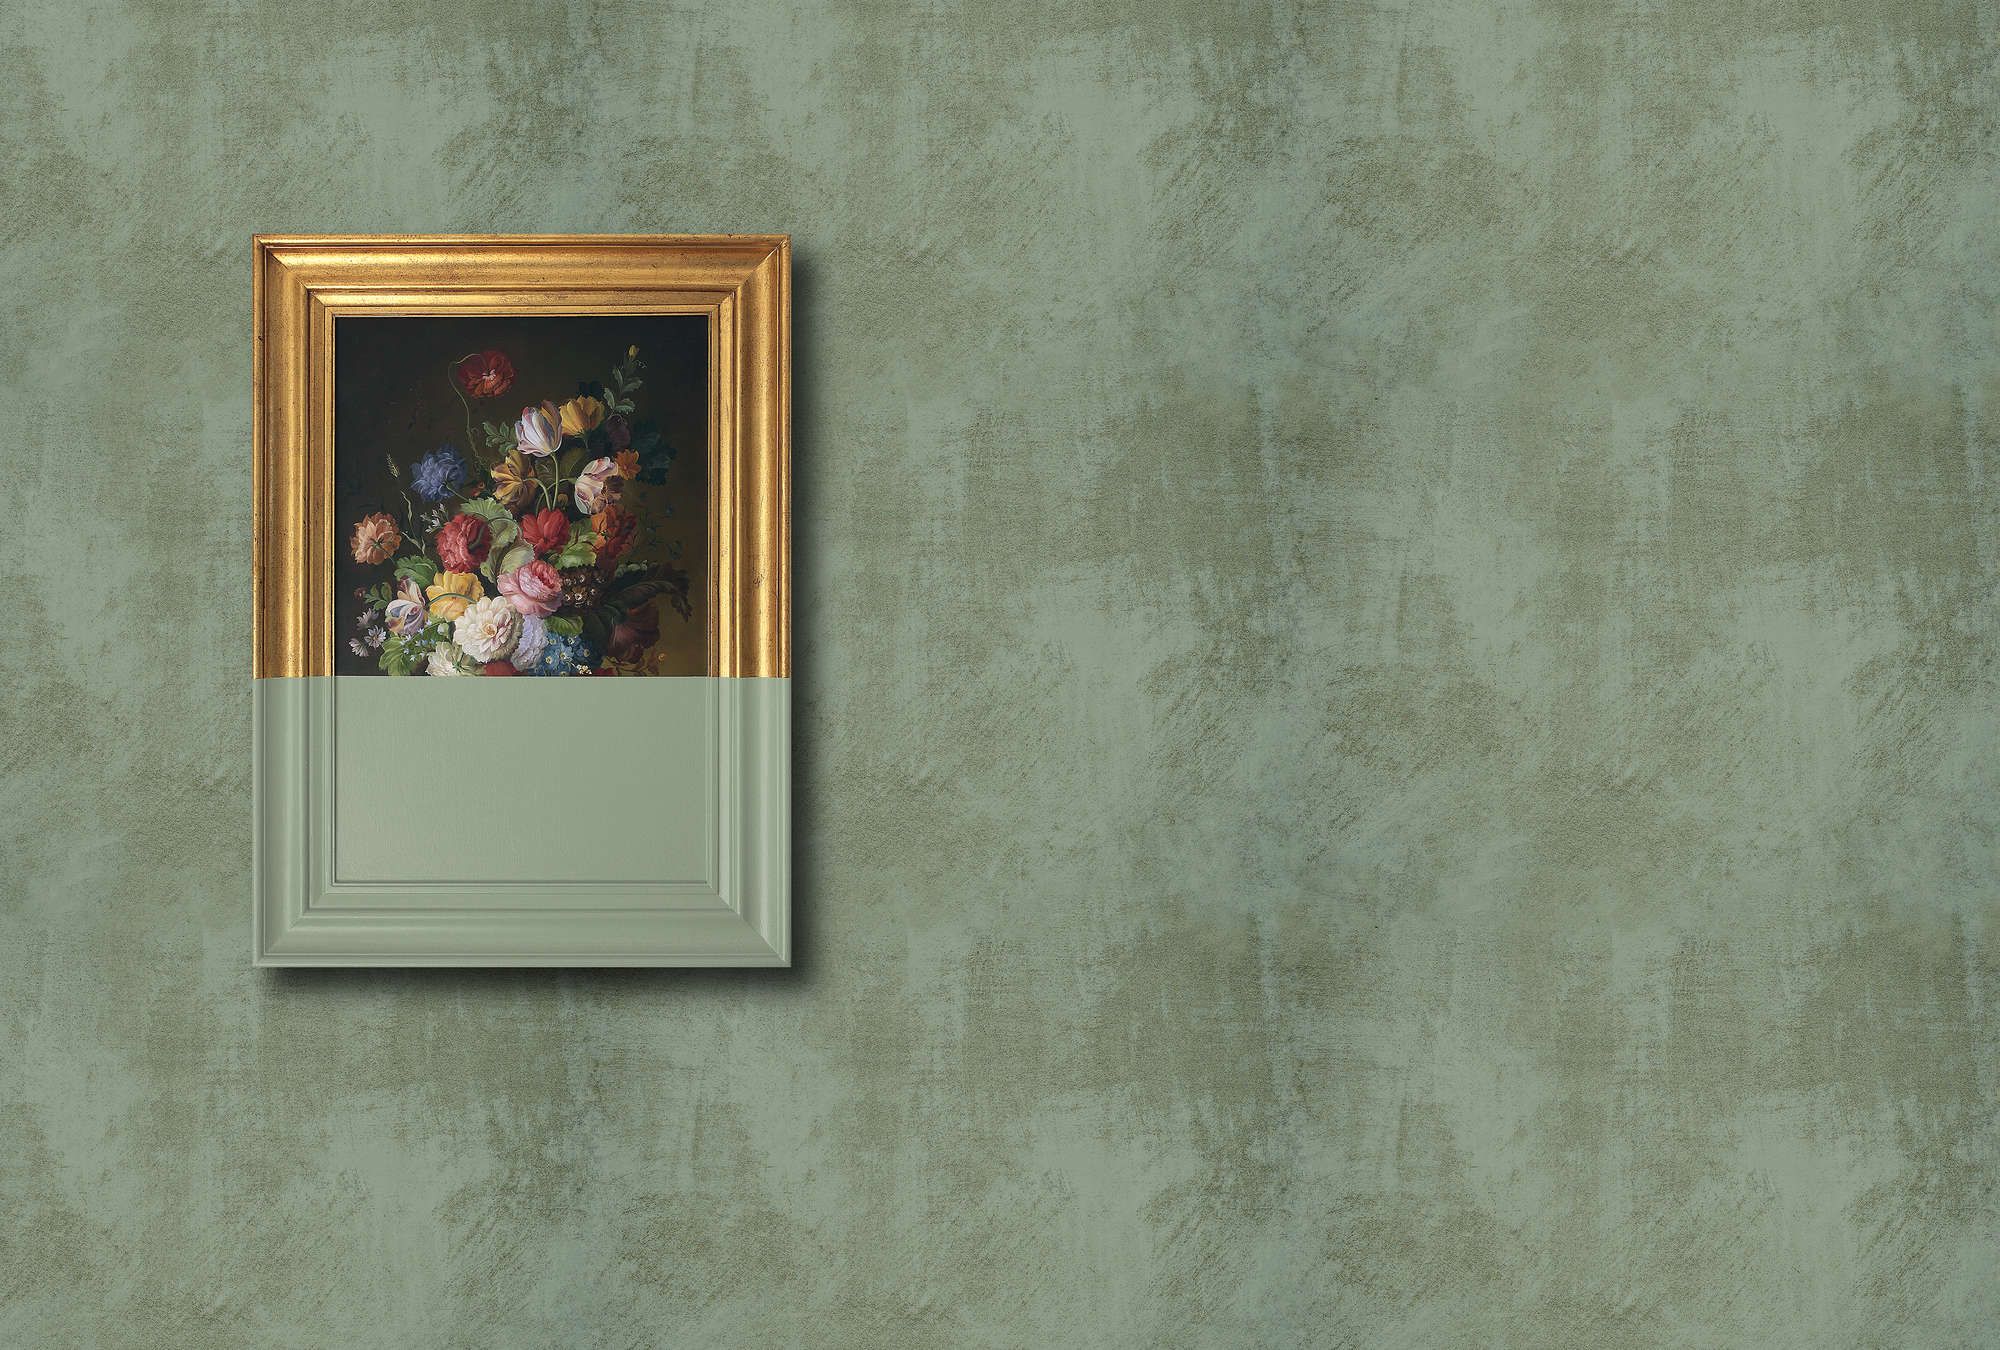             Frame 3 - Onderlaag behang Overschilderd Kunstwerk, Groen - Veegschoon Textuur - Groen, Koper | Textuur Niet-geweven
        